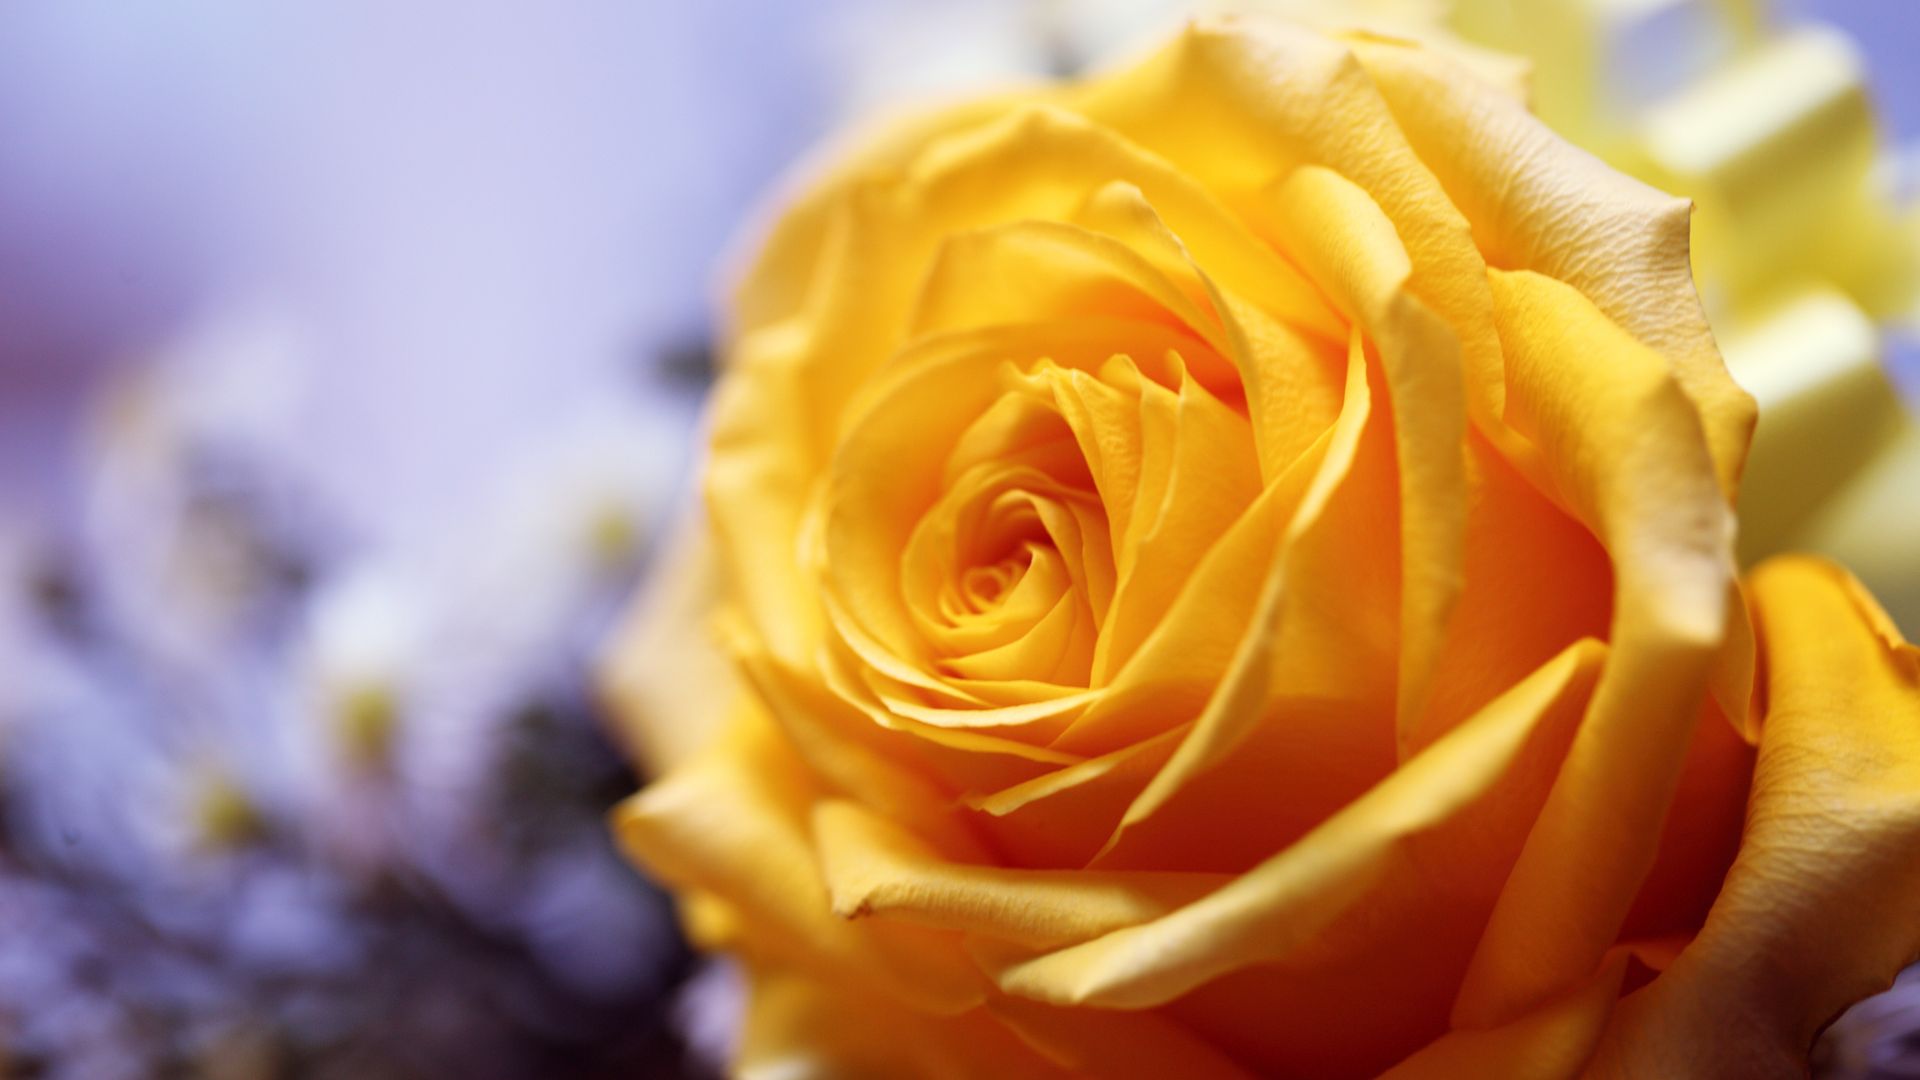 Yellow Rose Wallpaper - Garden Roses - HD Wallpaper 